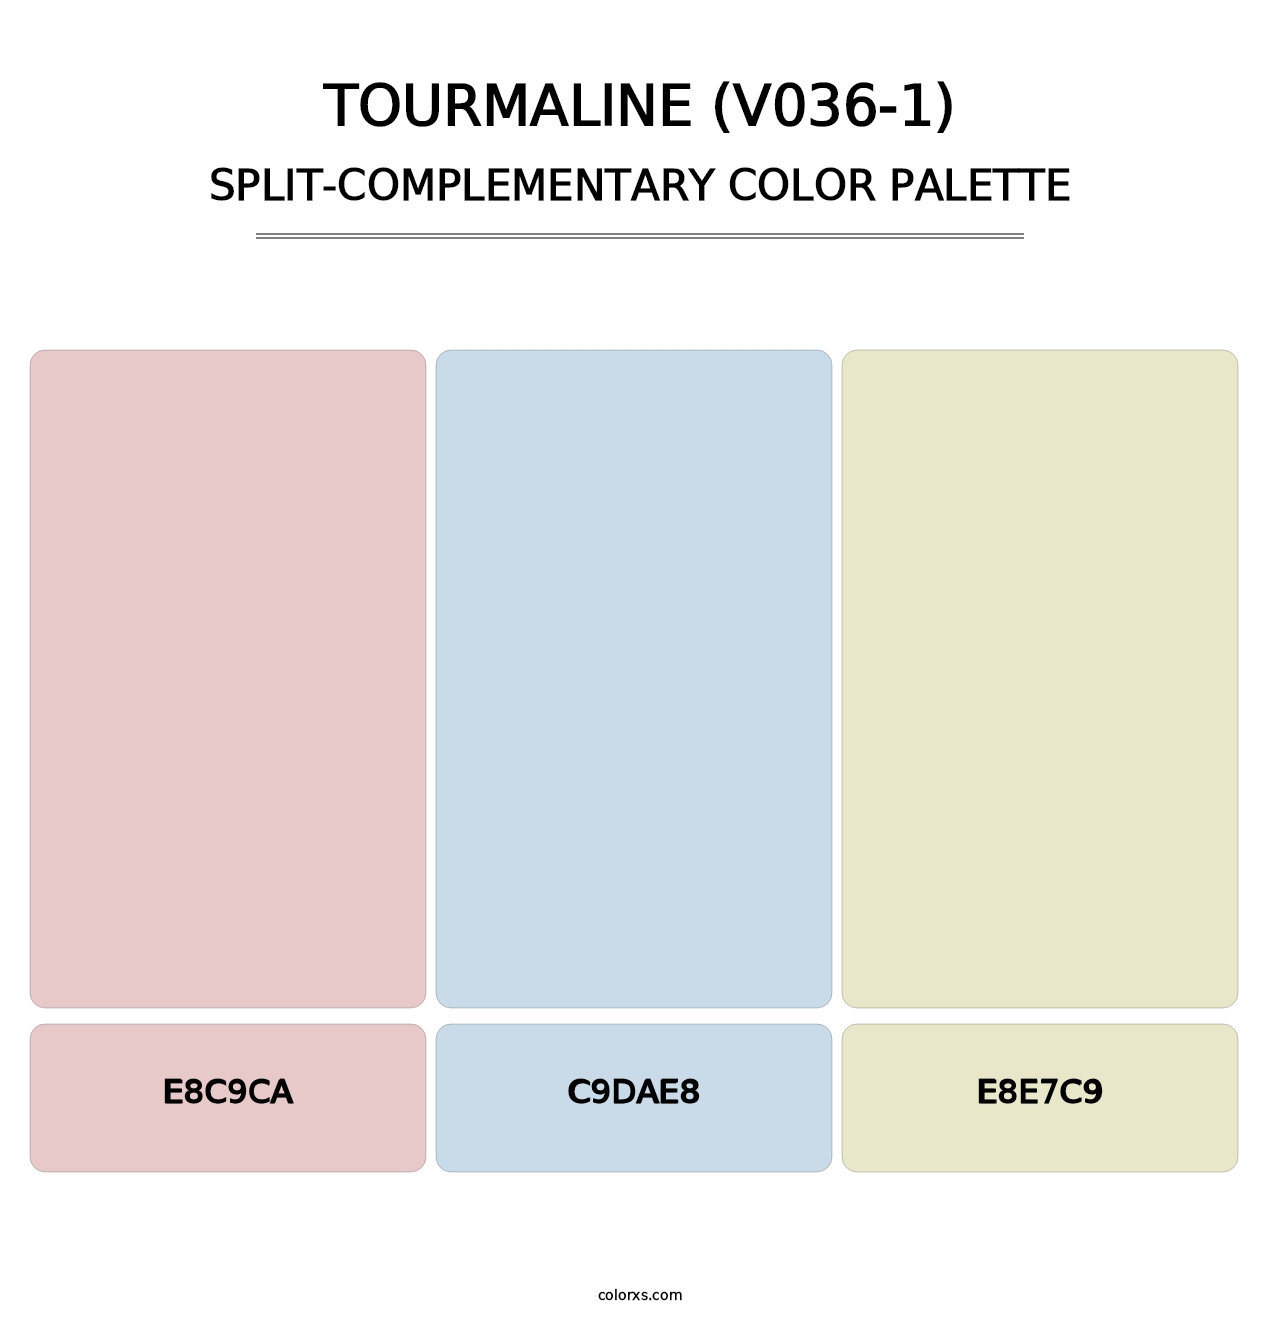 Tourmaline (V036-1) - Split-Complementary Color Palette